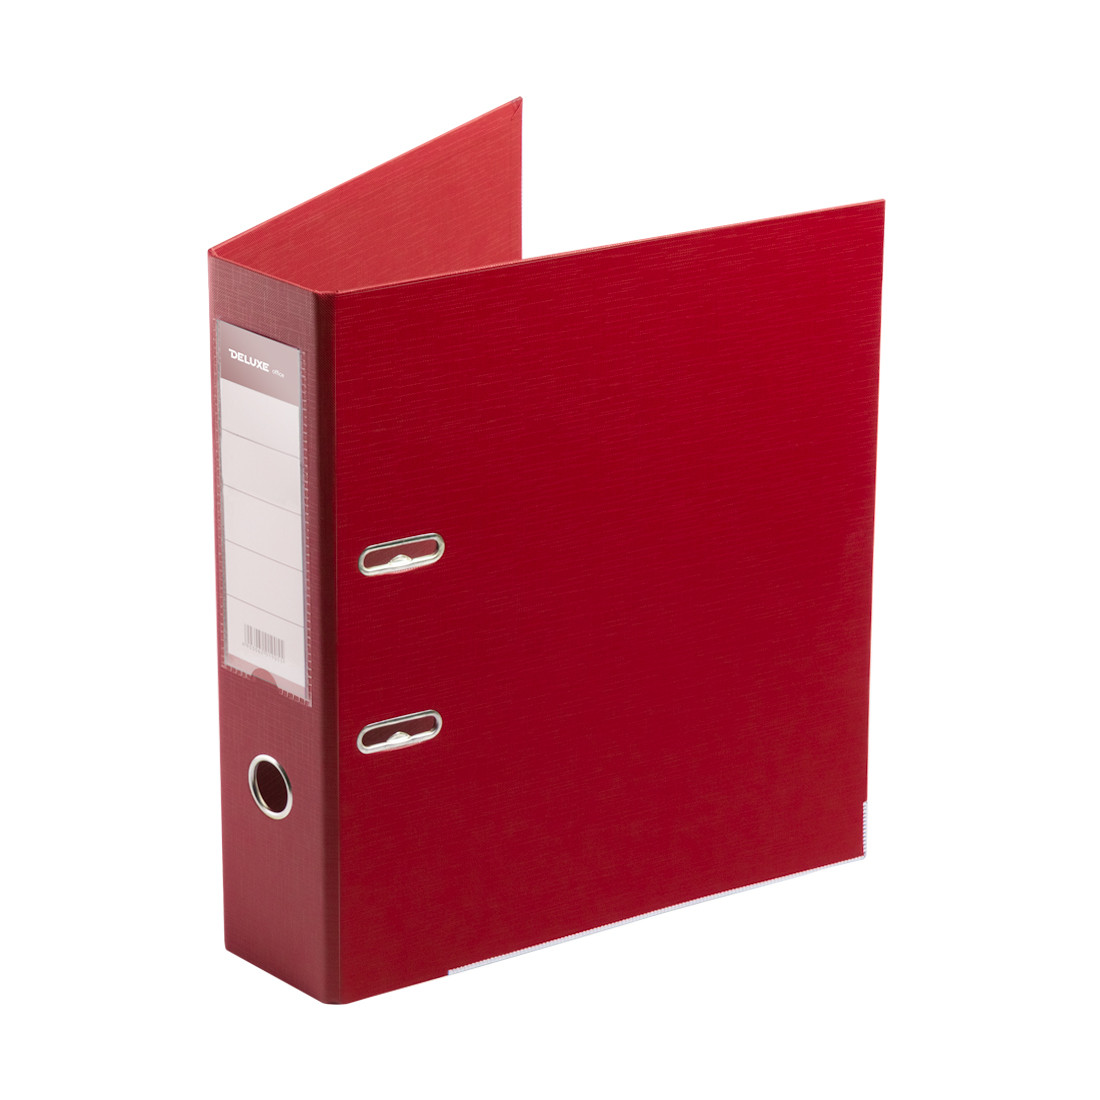 Папка-регистратор Deluxe с арочным механизмом, Office 3-RD24 (3" RED), А4, 70 мм, красный, фото 1